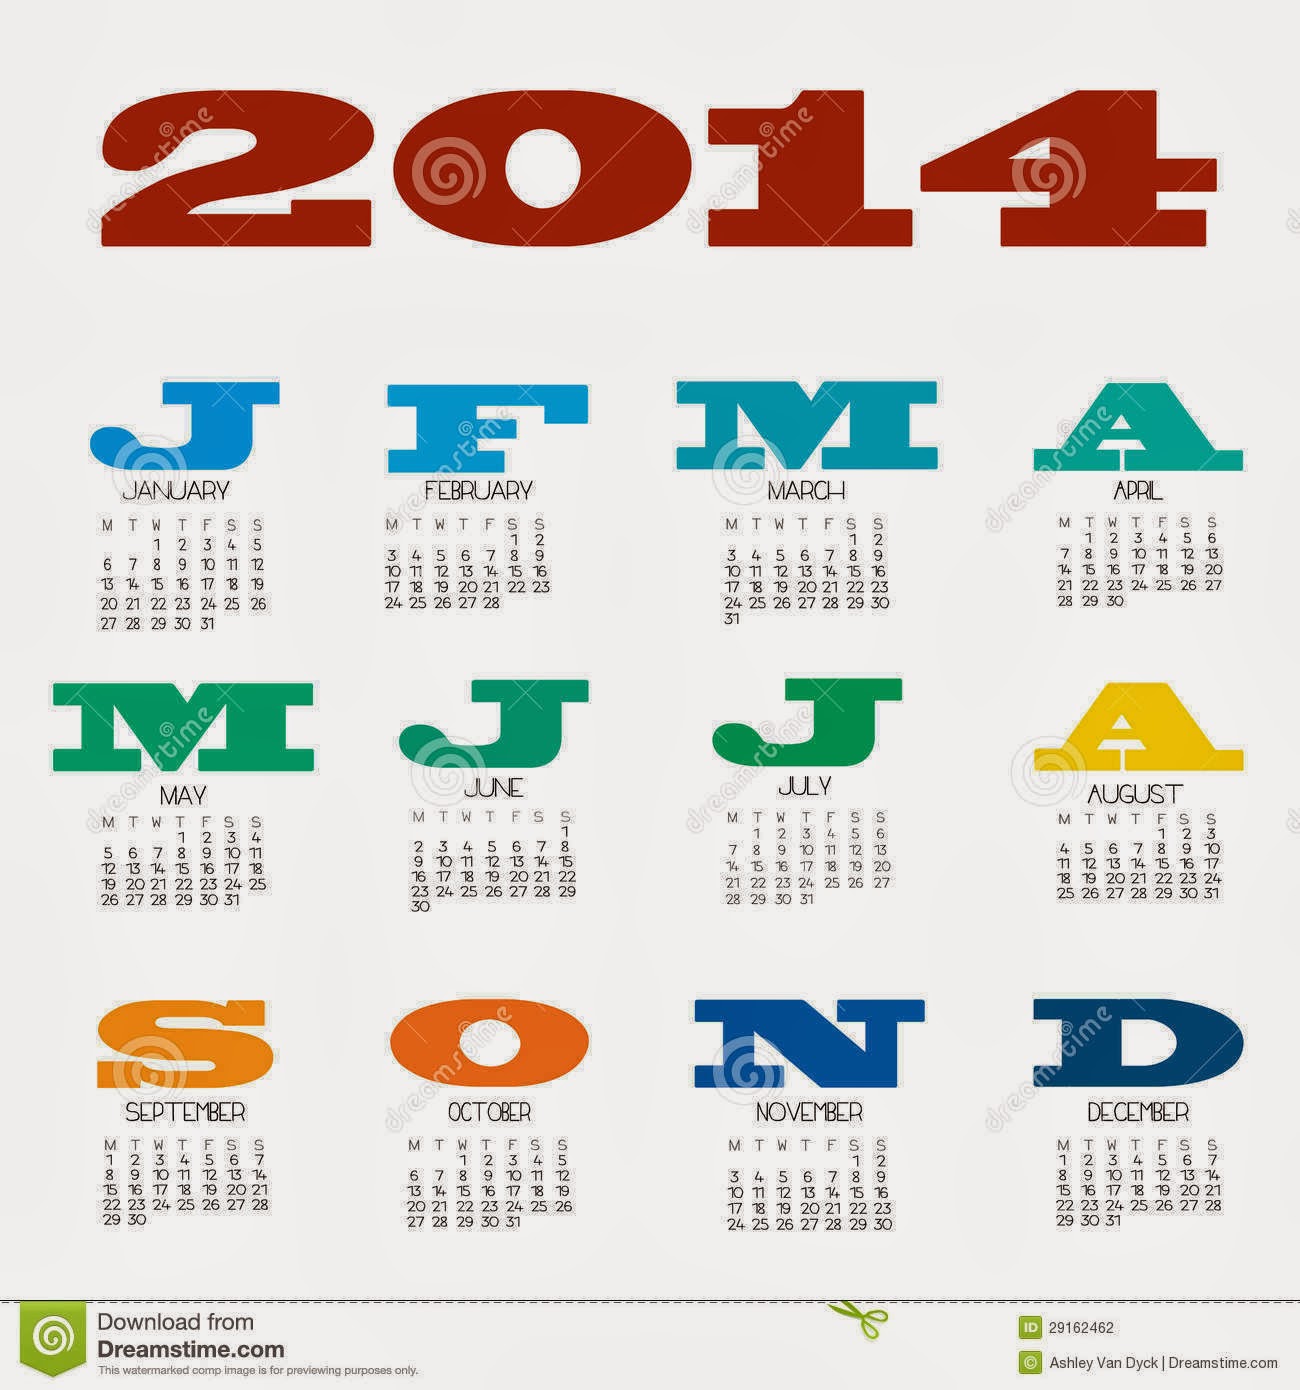 صور وخلفيات تقويم سنة 2014 , صور التقويم الميلادي 2014 جديدة , صور نتيجة 2014